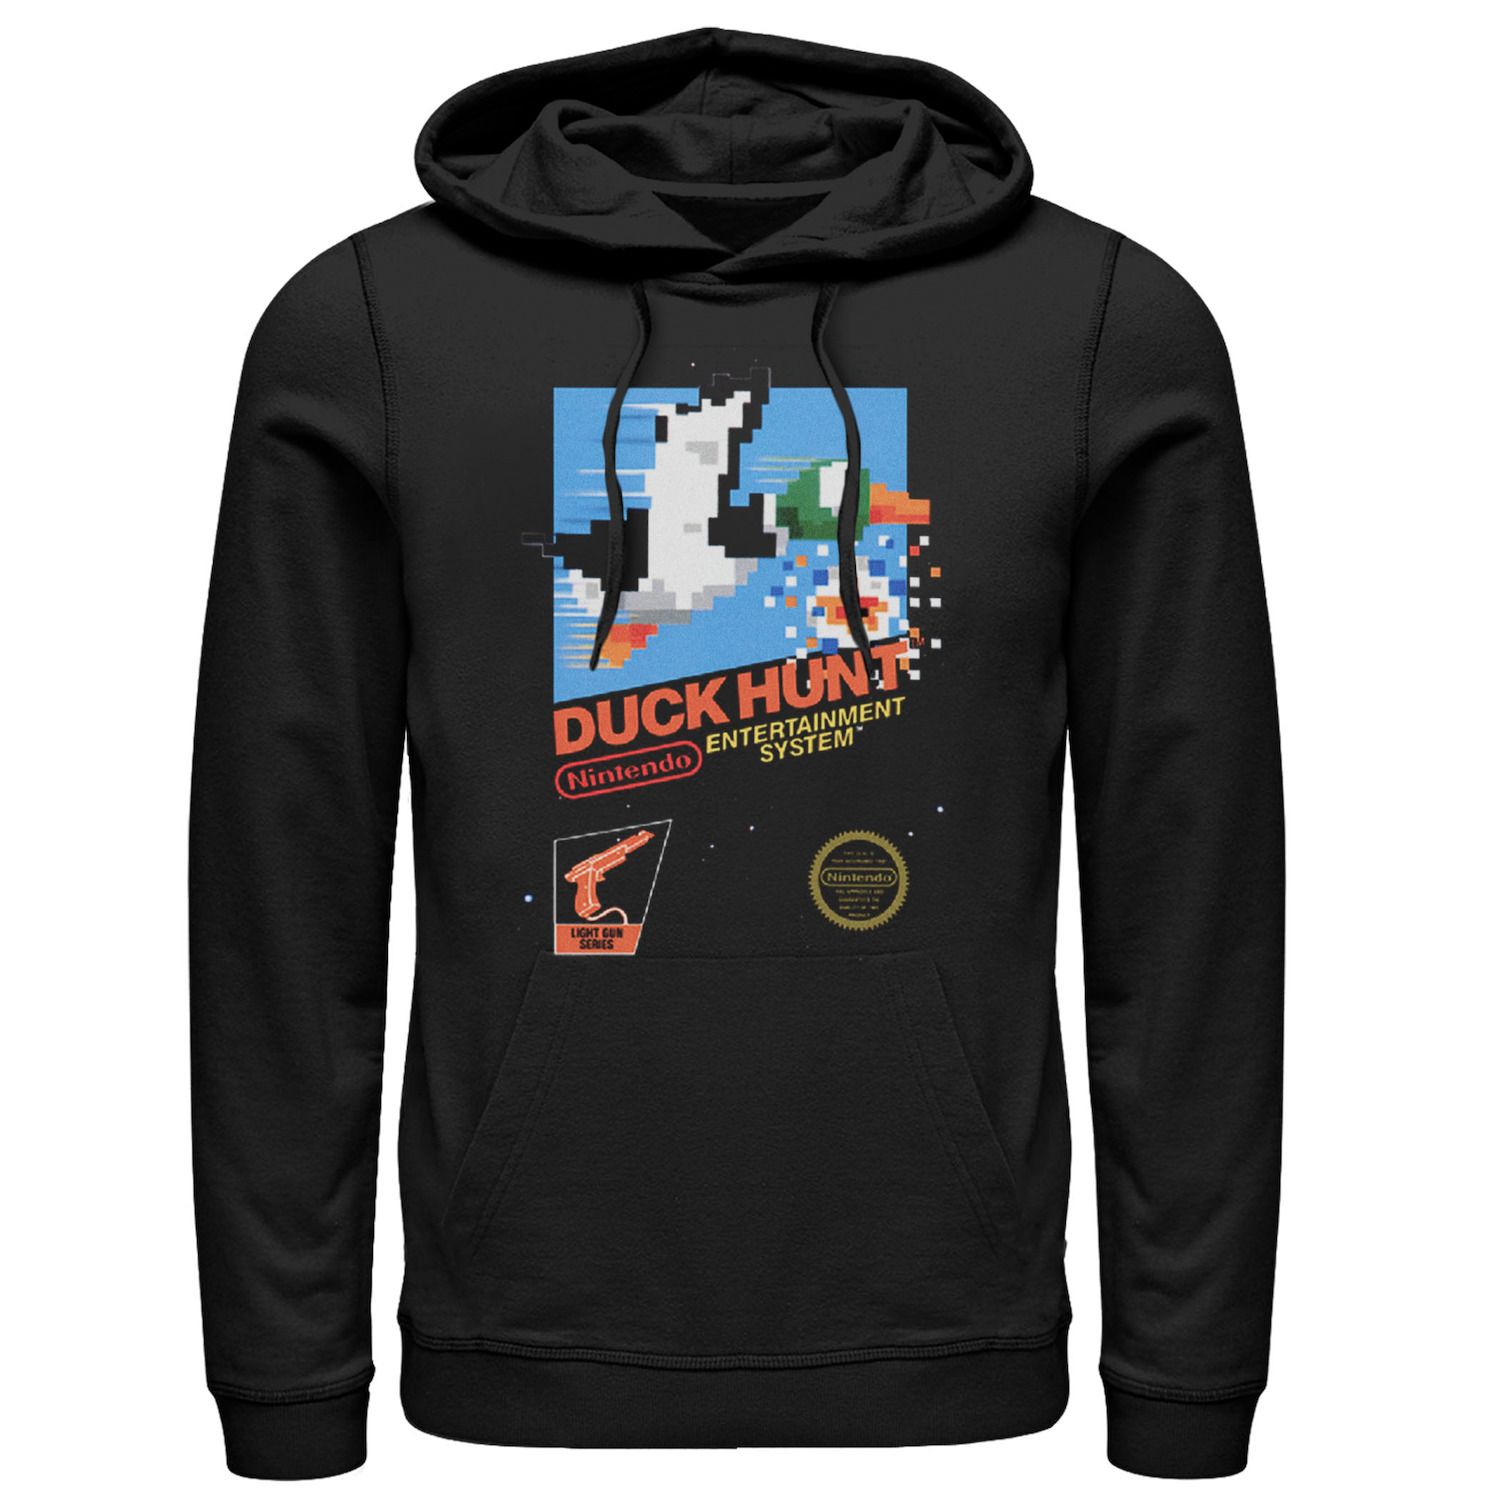 Мужской пуловер с капюшоном в стиле ретро для Nintendo NES Duck Hunt в винтажном стиле Licensed Character